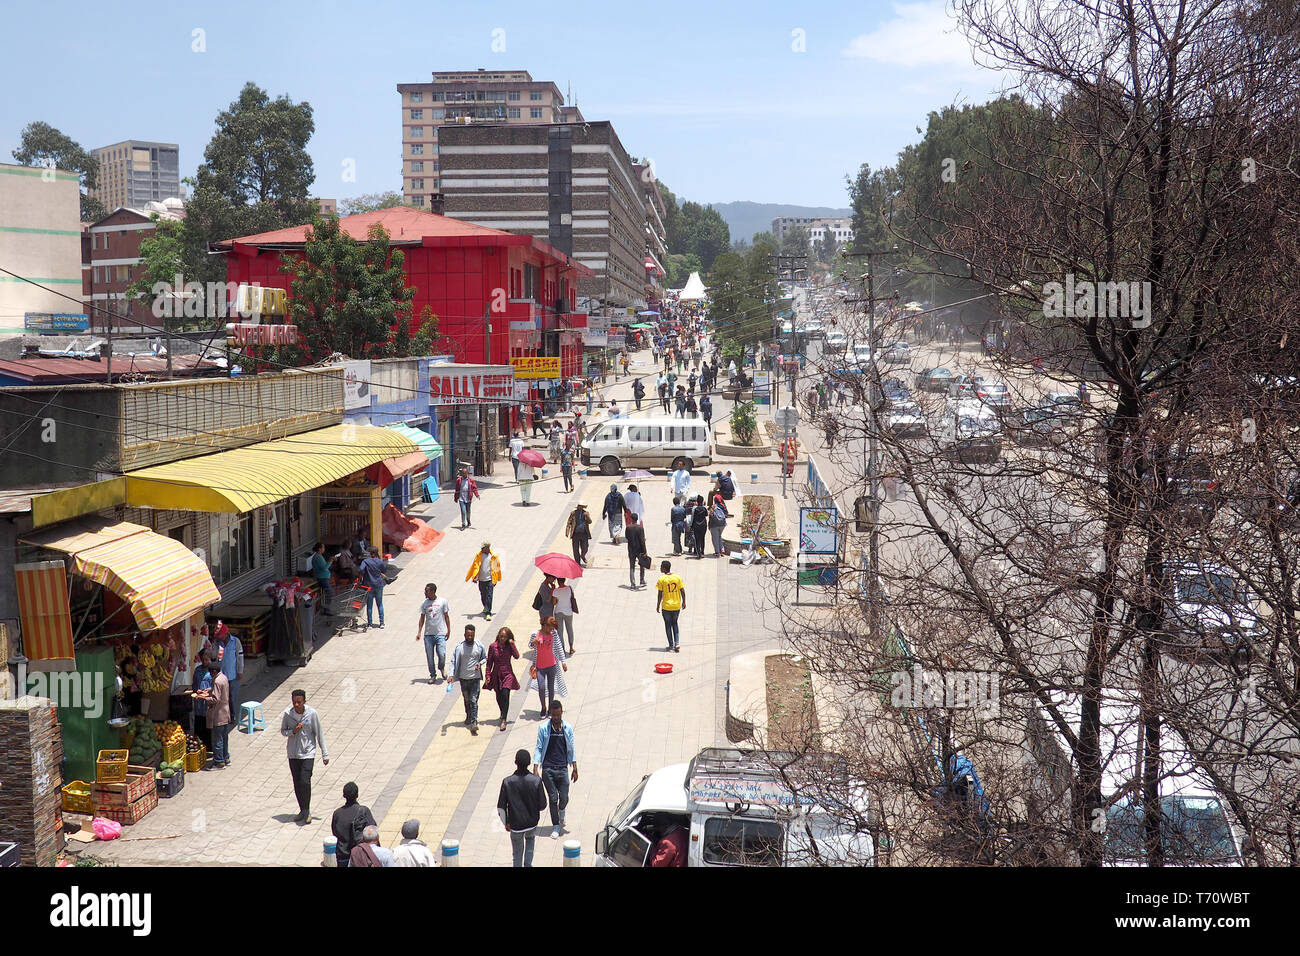 Etiopia ad Addis Abeba - 9 Aprile 2019 : strada trafficata nella capitale etiopica città di Addis Abeba. Foto Stock